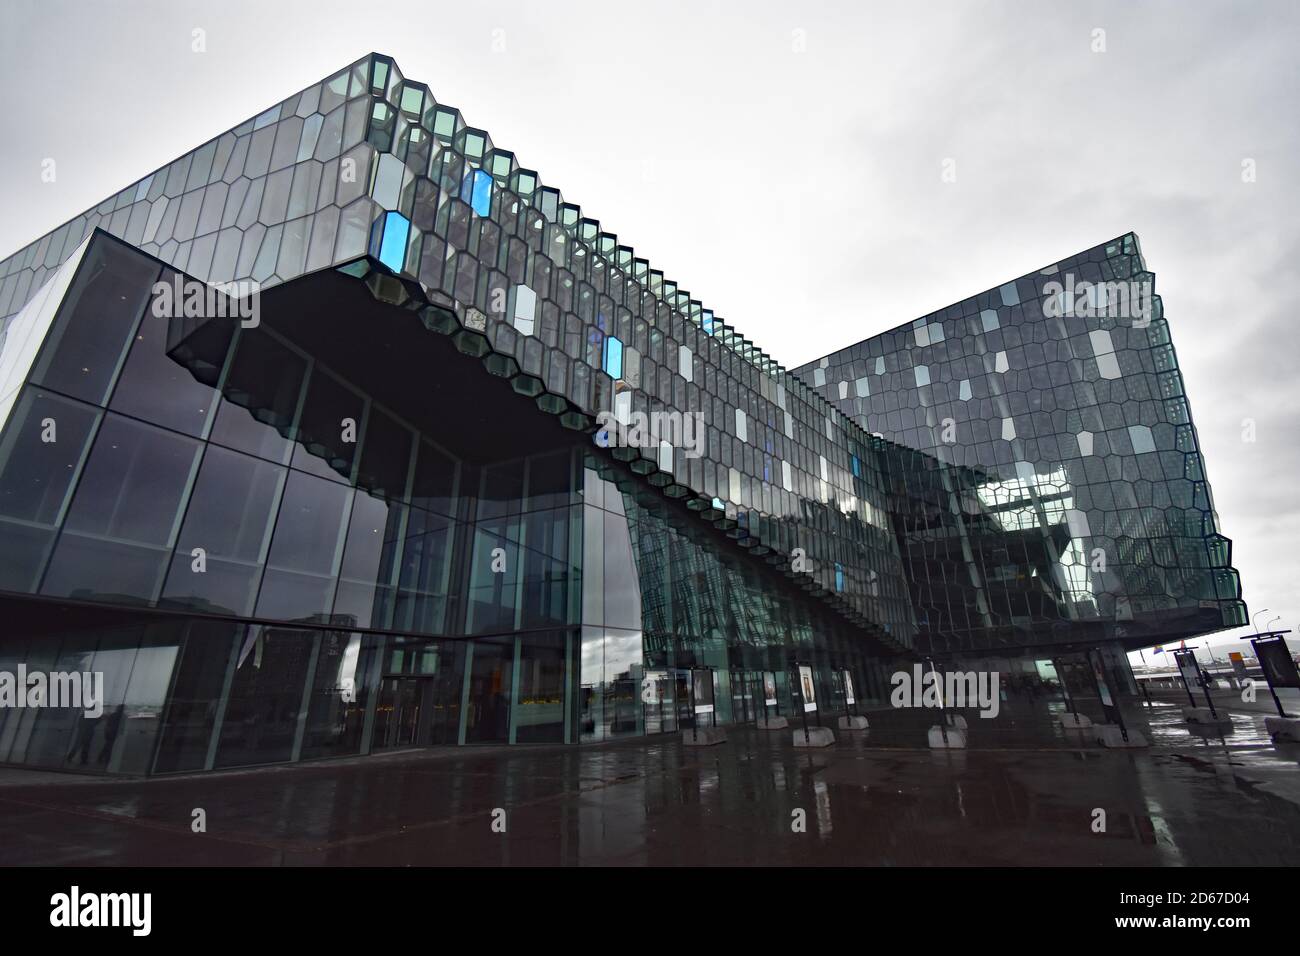 Die markante moderne Architektur der Harpa-Konzerthalle und des Konferenzzentrums in Reykjavik, Island. Draußen gibt es eine kleine Fotokunst-Ausstellung. Stockfoto